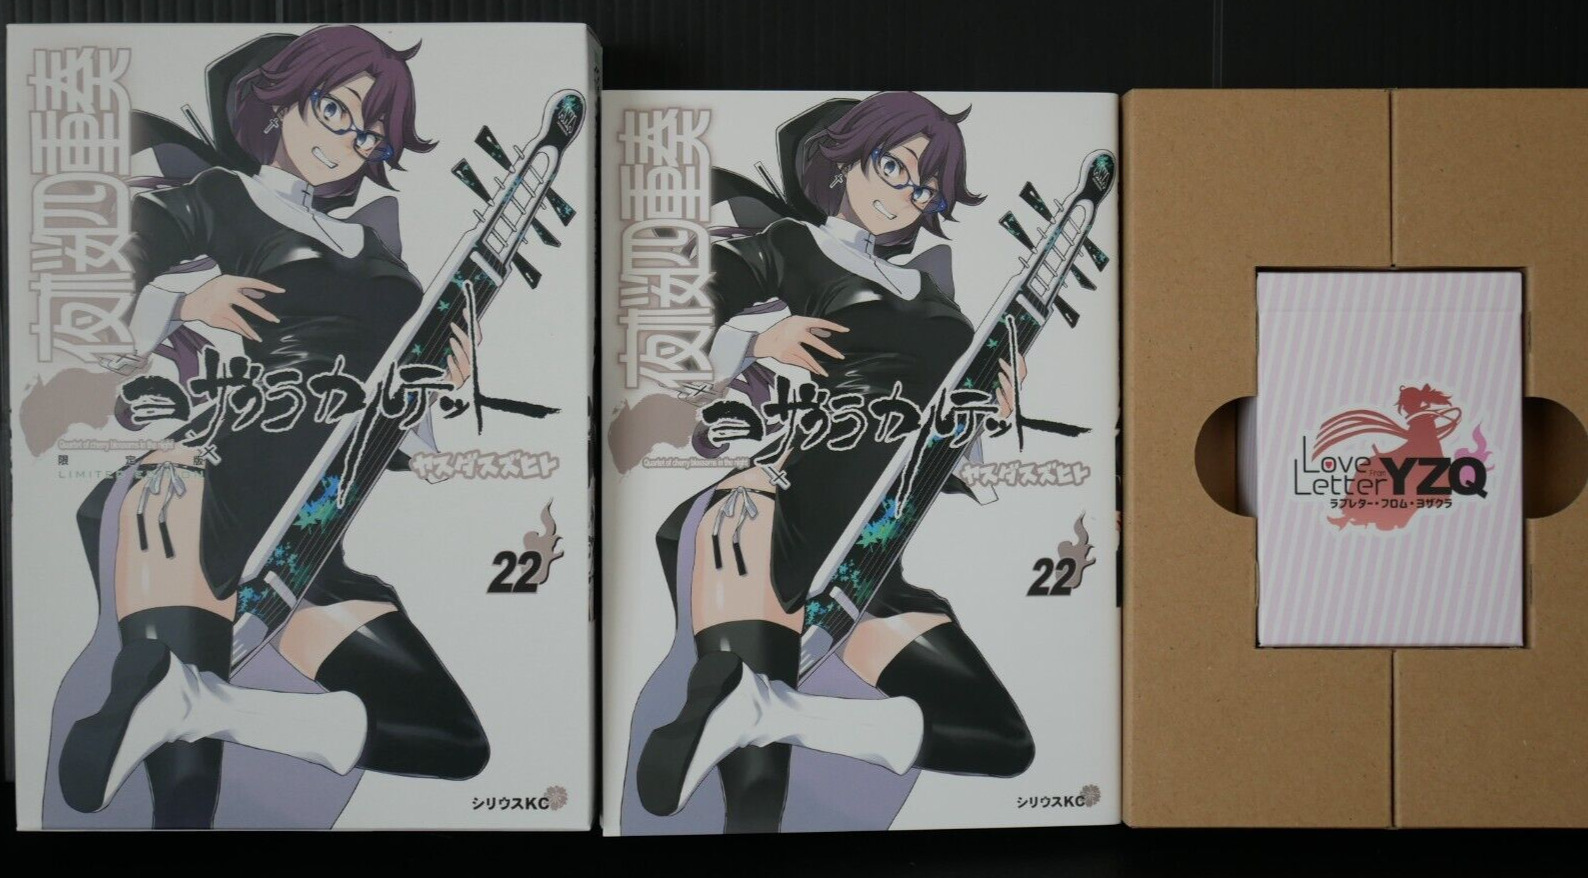 SHOHAN: Yozakura Quartet Vol.22 Manga Limited Edition by Suzuhito Yasuda